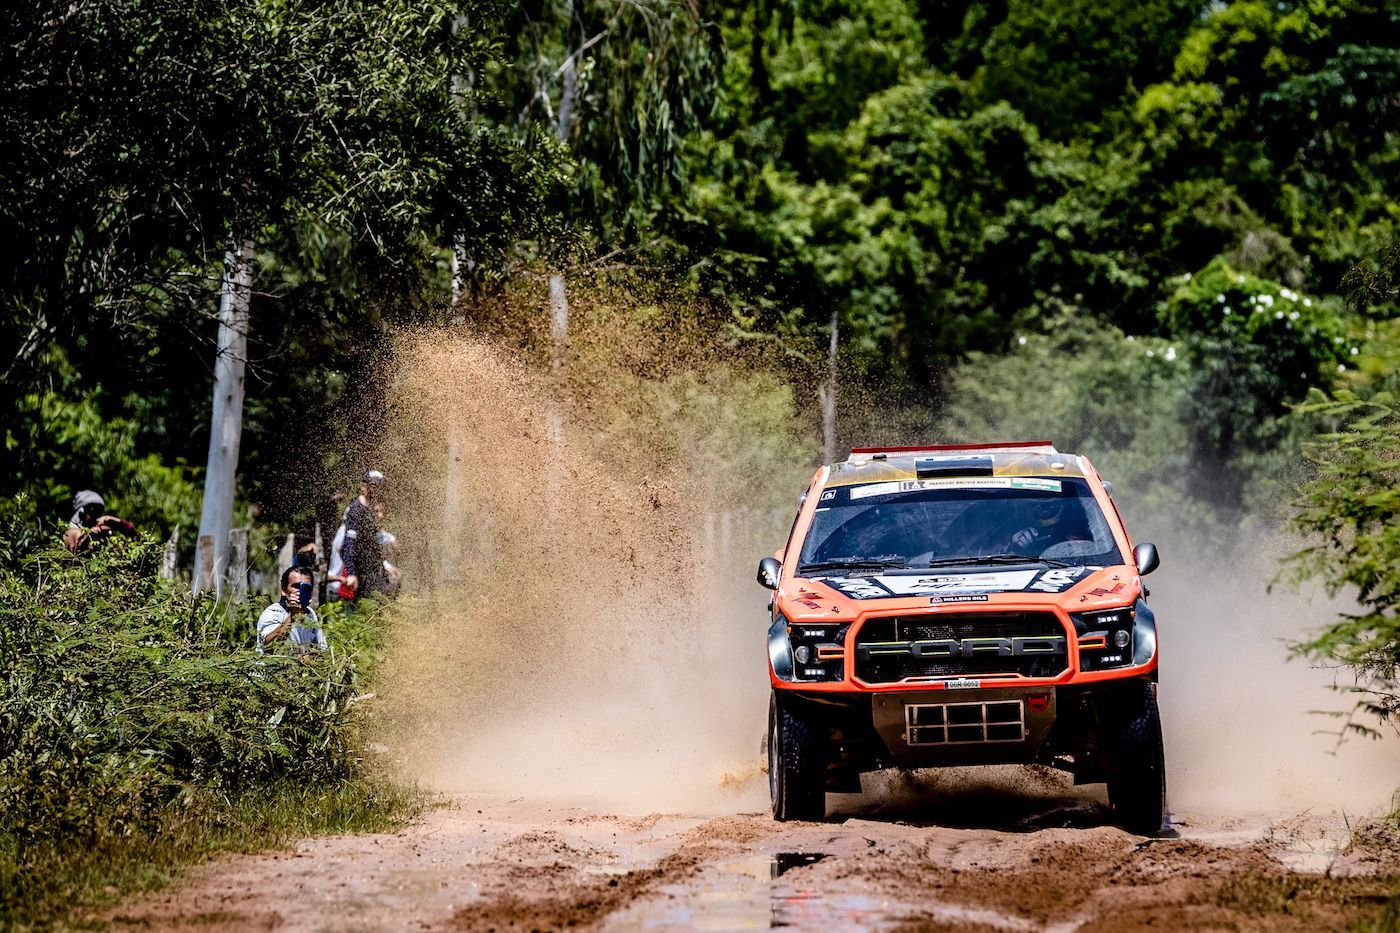 Rallye Dakar 2017, 2. etapa: Martin Prokop, Ford